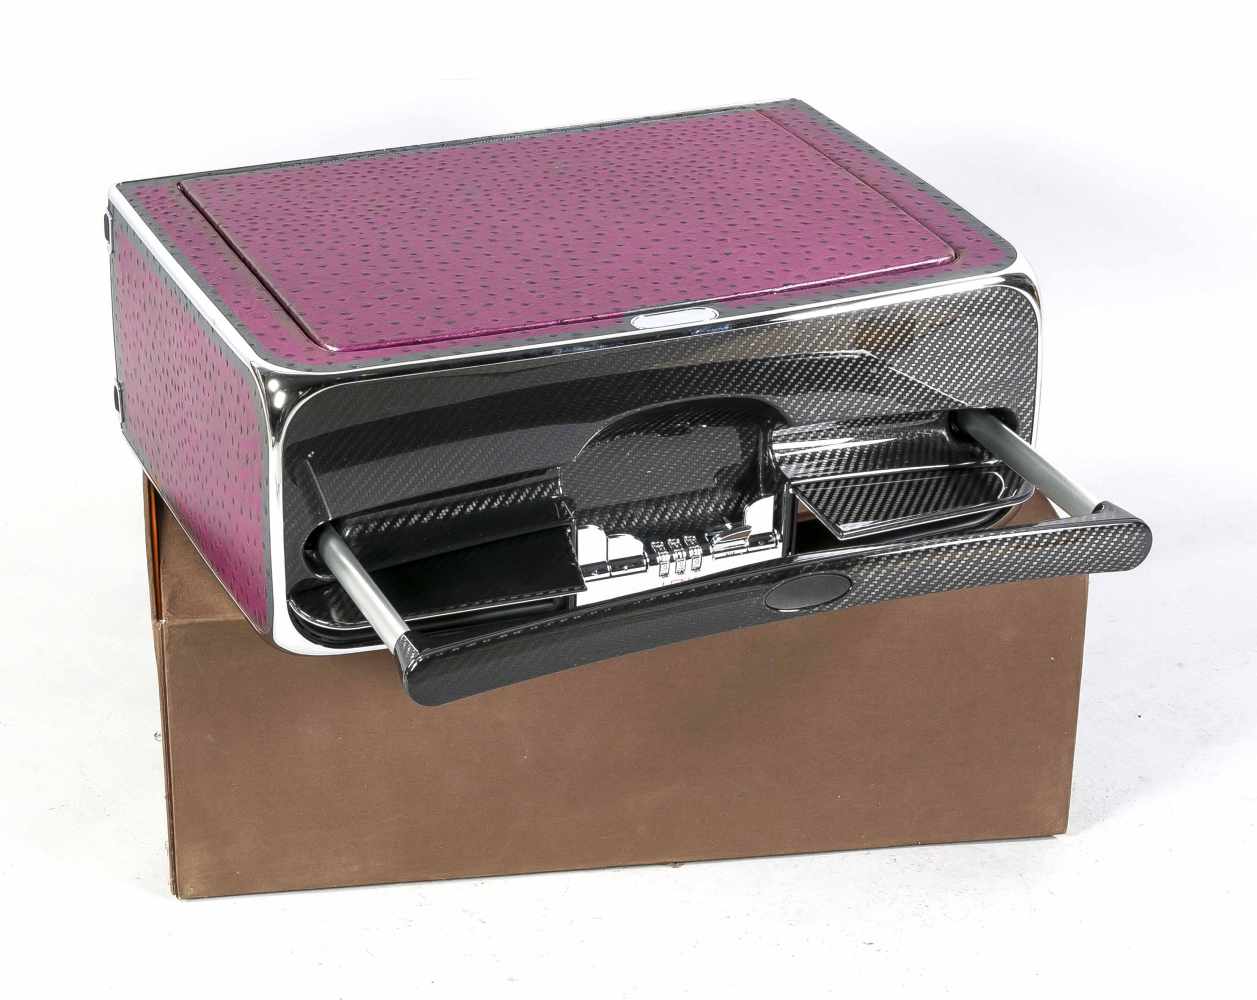 Classic Koffer, Henk Luxury Goods Ltd., Grünwald, 2005/09, purpurfarbenes Straußenleder, Carbon, - Image 2 of 3